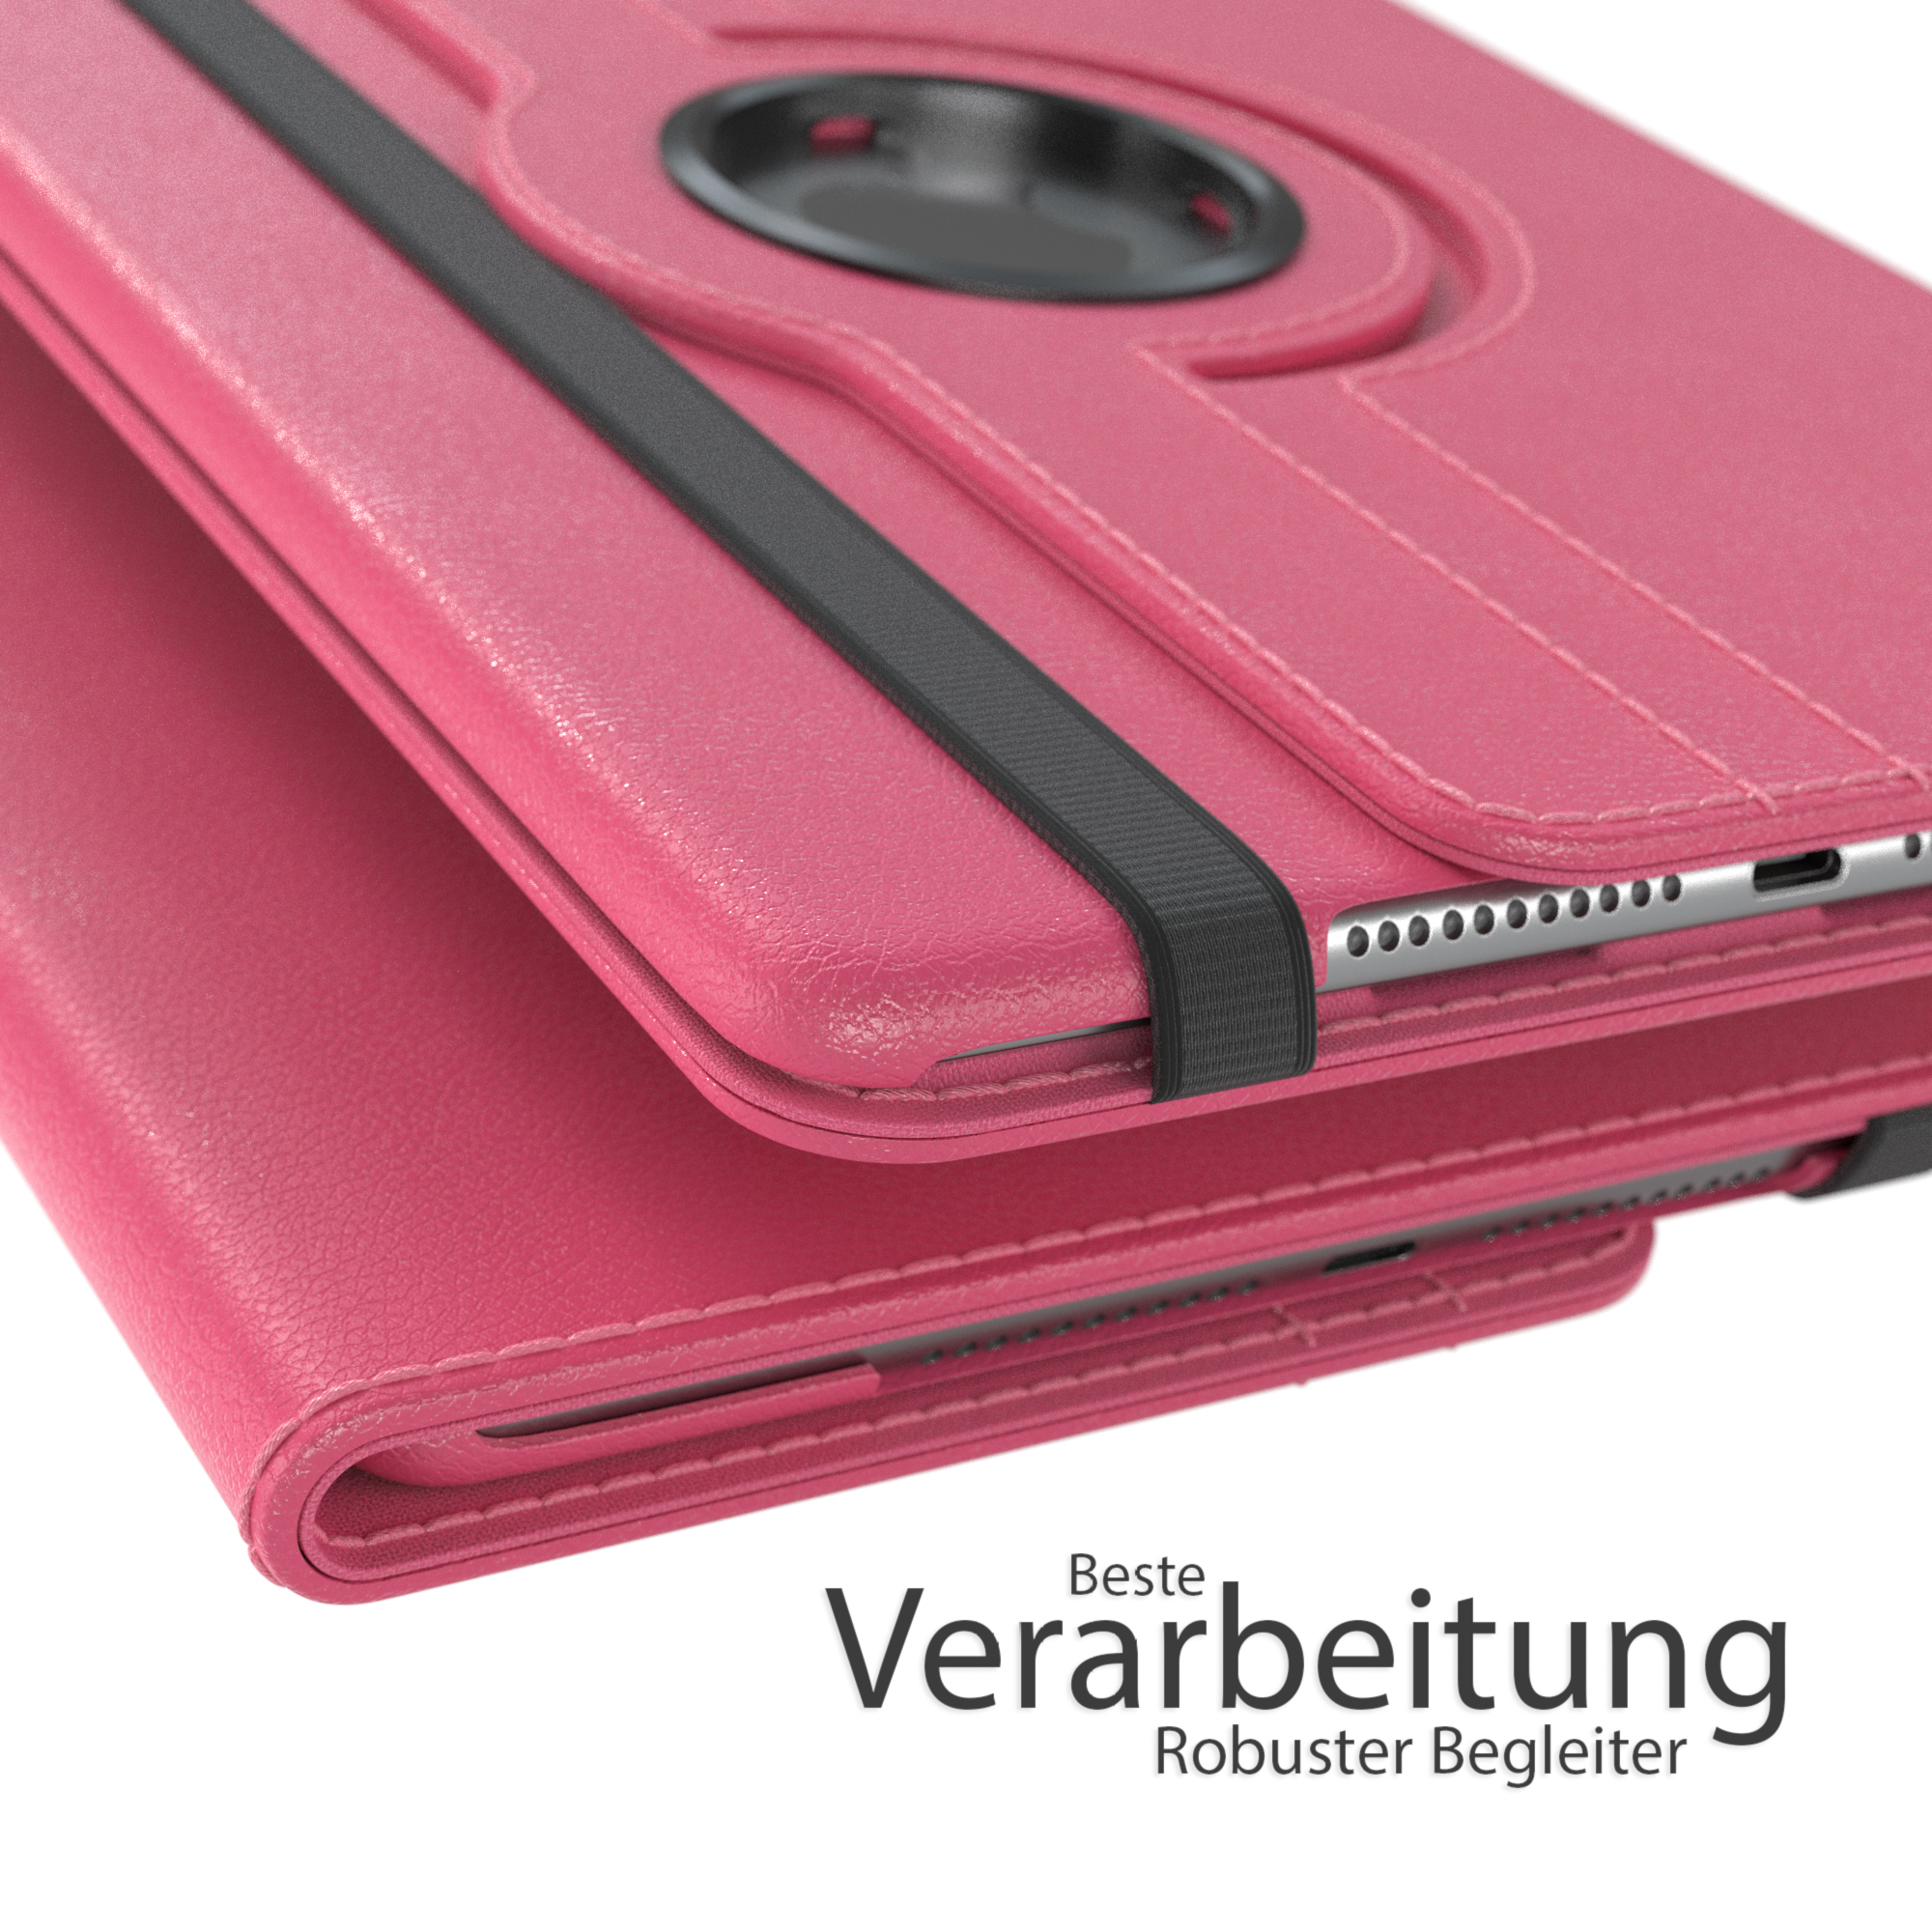 EAZY CASE Schutzhülle iPad 2019 5 Mini Pink für 7.9\